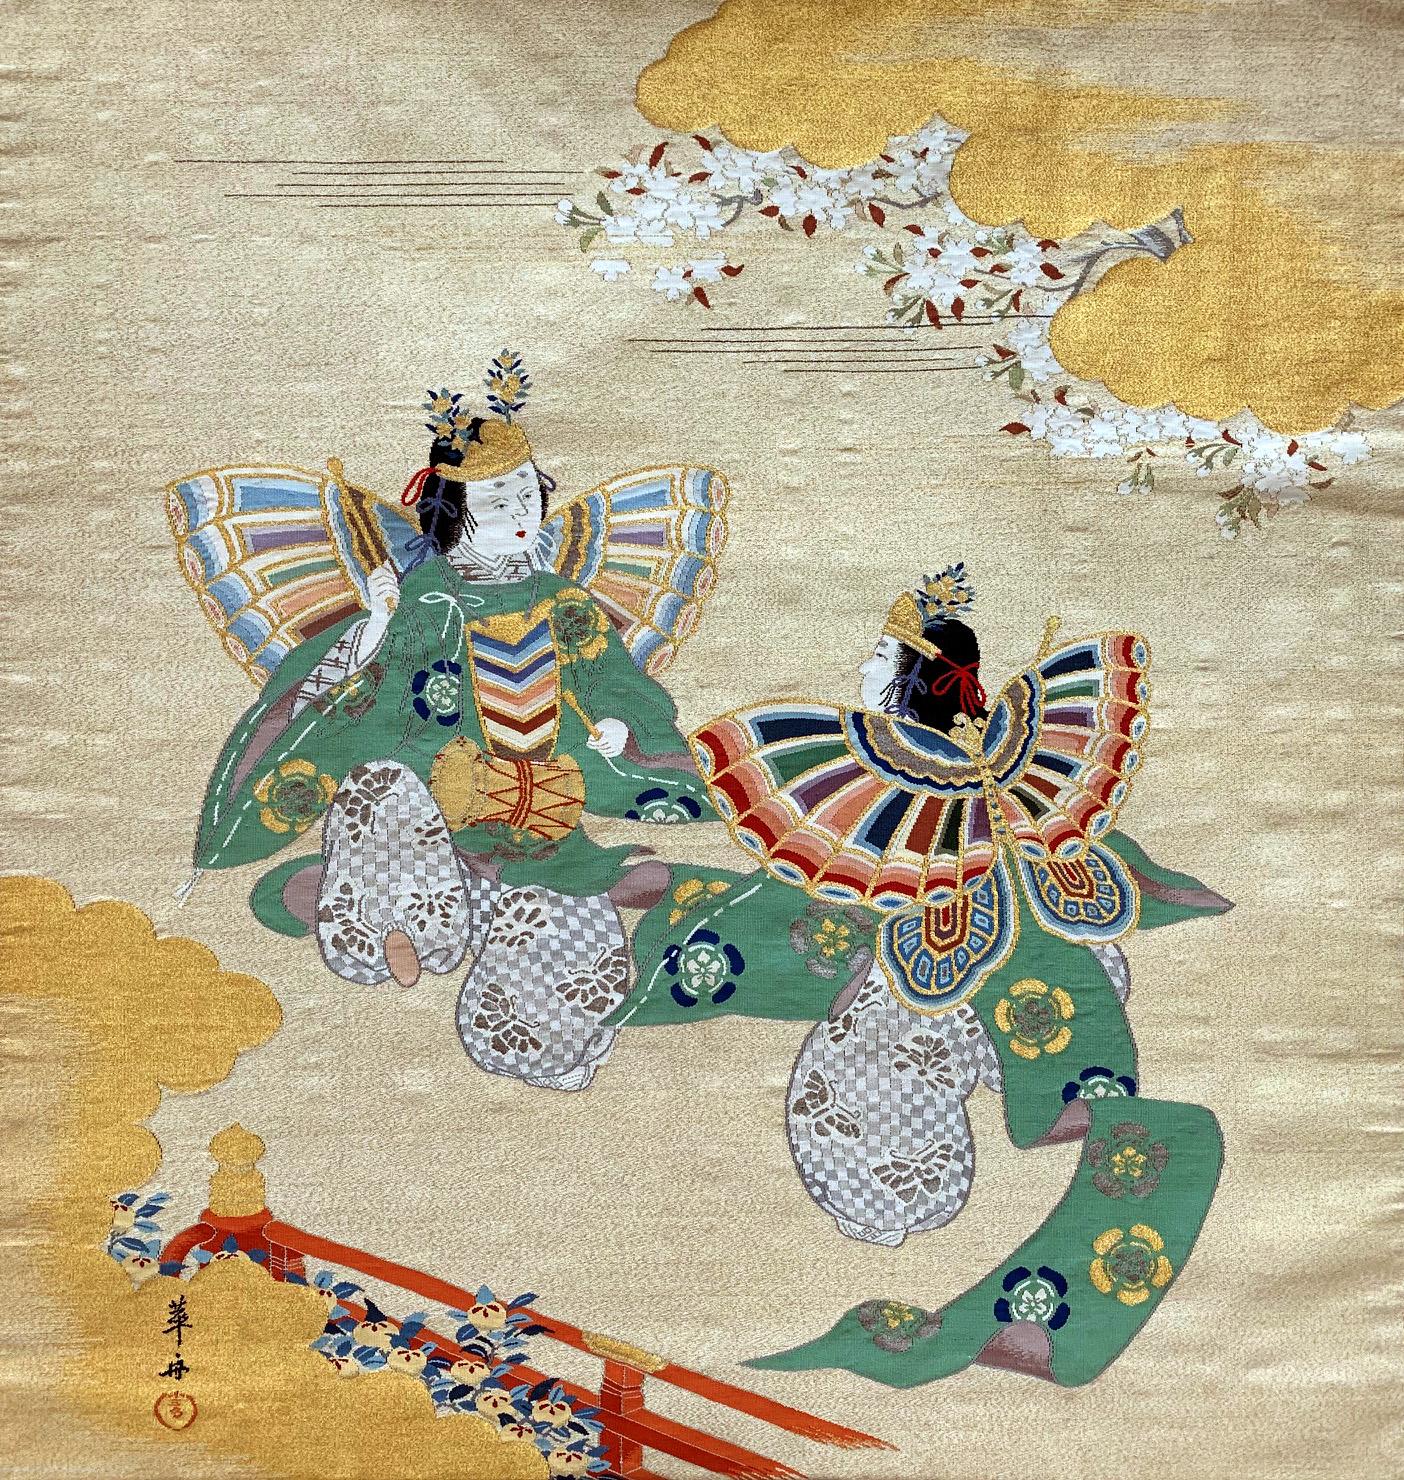 Panneau textile japonais Fukusa de la période Meiji, datant de la fin du XIXe siècle et du début du XXe siècle. Sur le fond de brocart tissé avec du fil d'or formant des nuages et de la brume, la composition principale met en scène deux